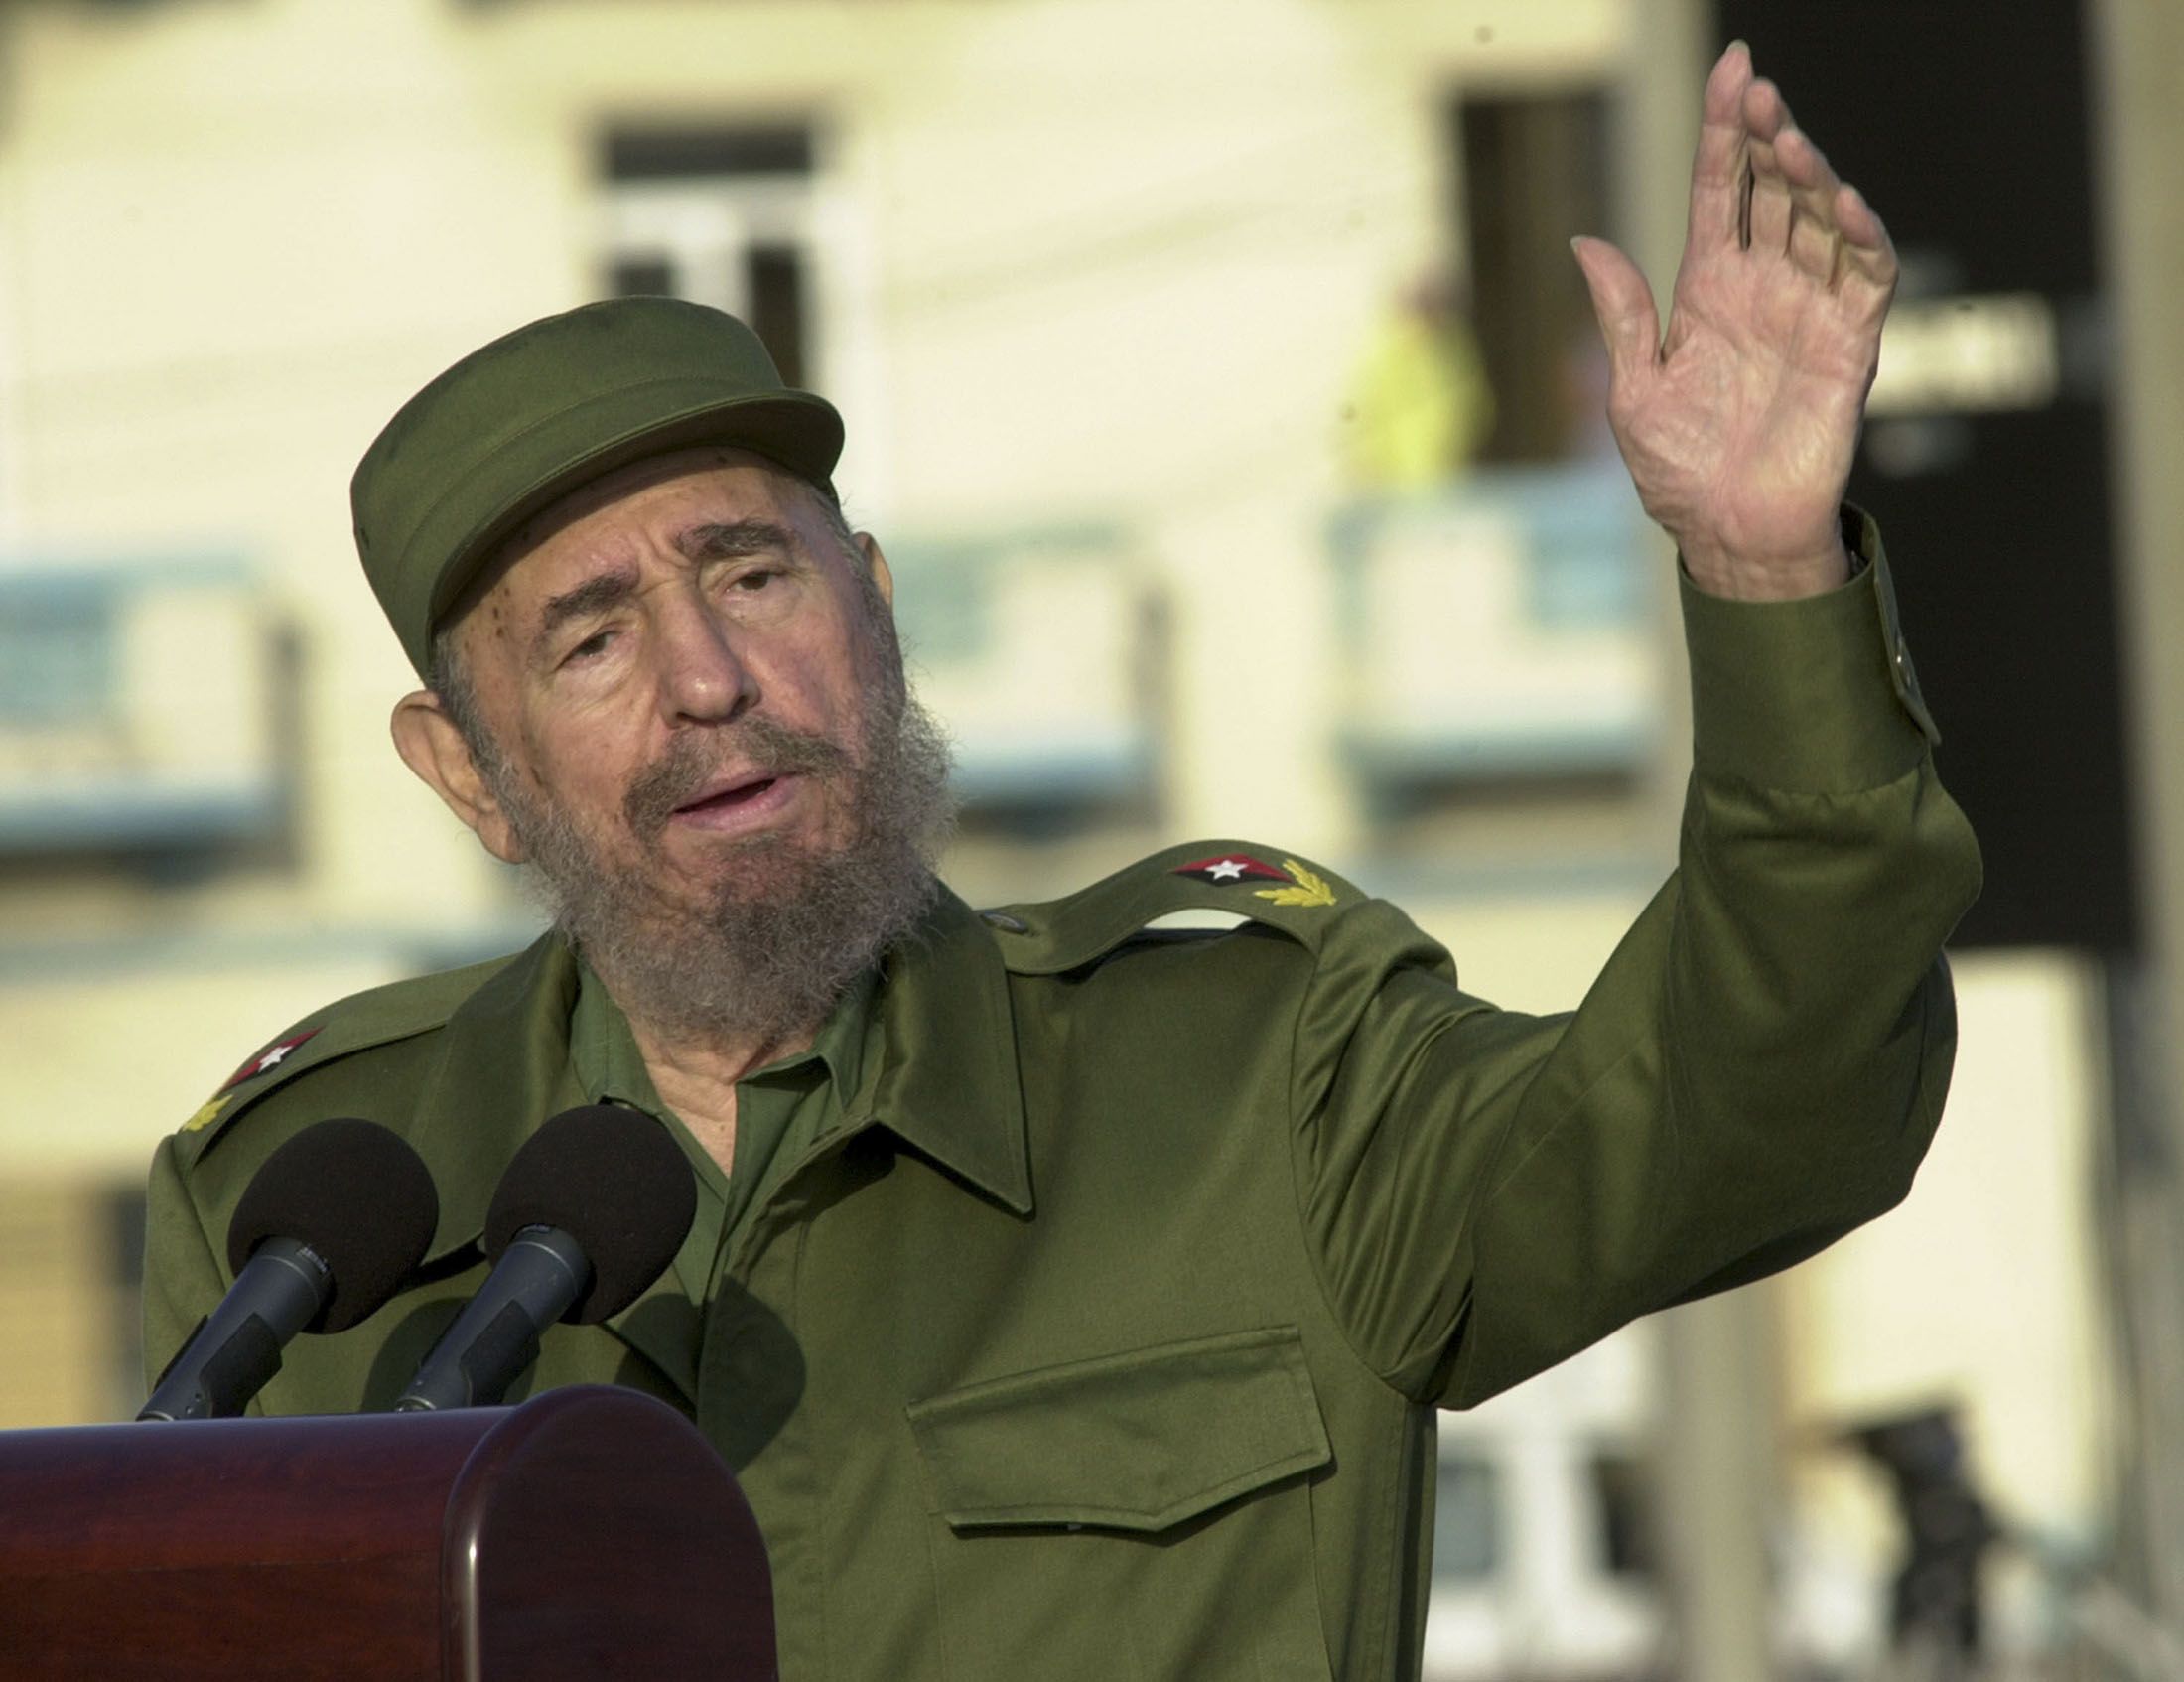 El líder revolucionario y dictador Fidel Castro dejó el poder en 2006, dejando a su hermano Rául como sucesor. Falleció en 2016 a los 90 años